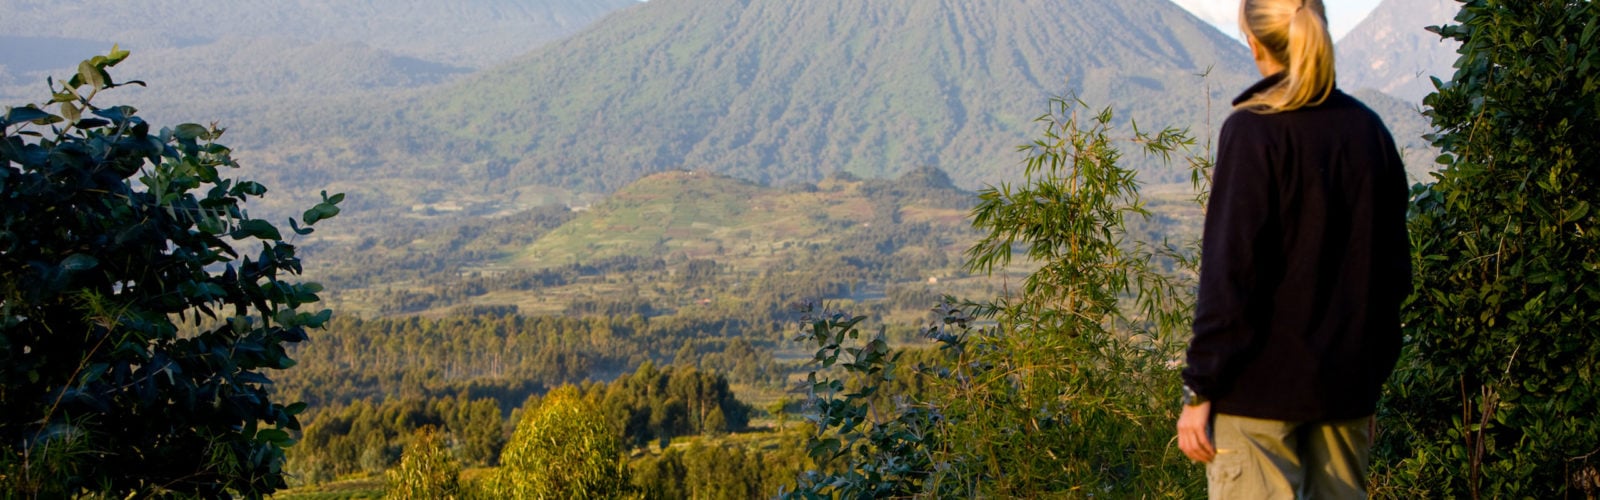 Volcano-view-Rwanda